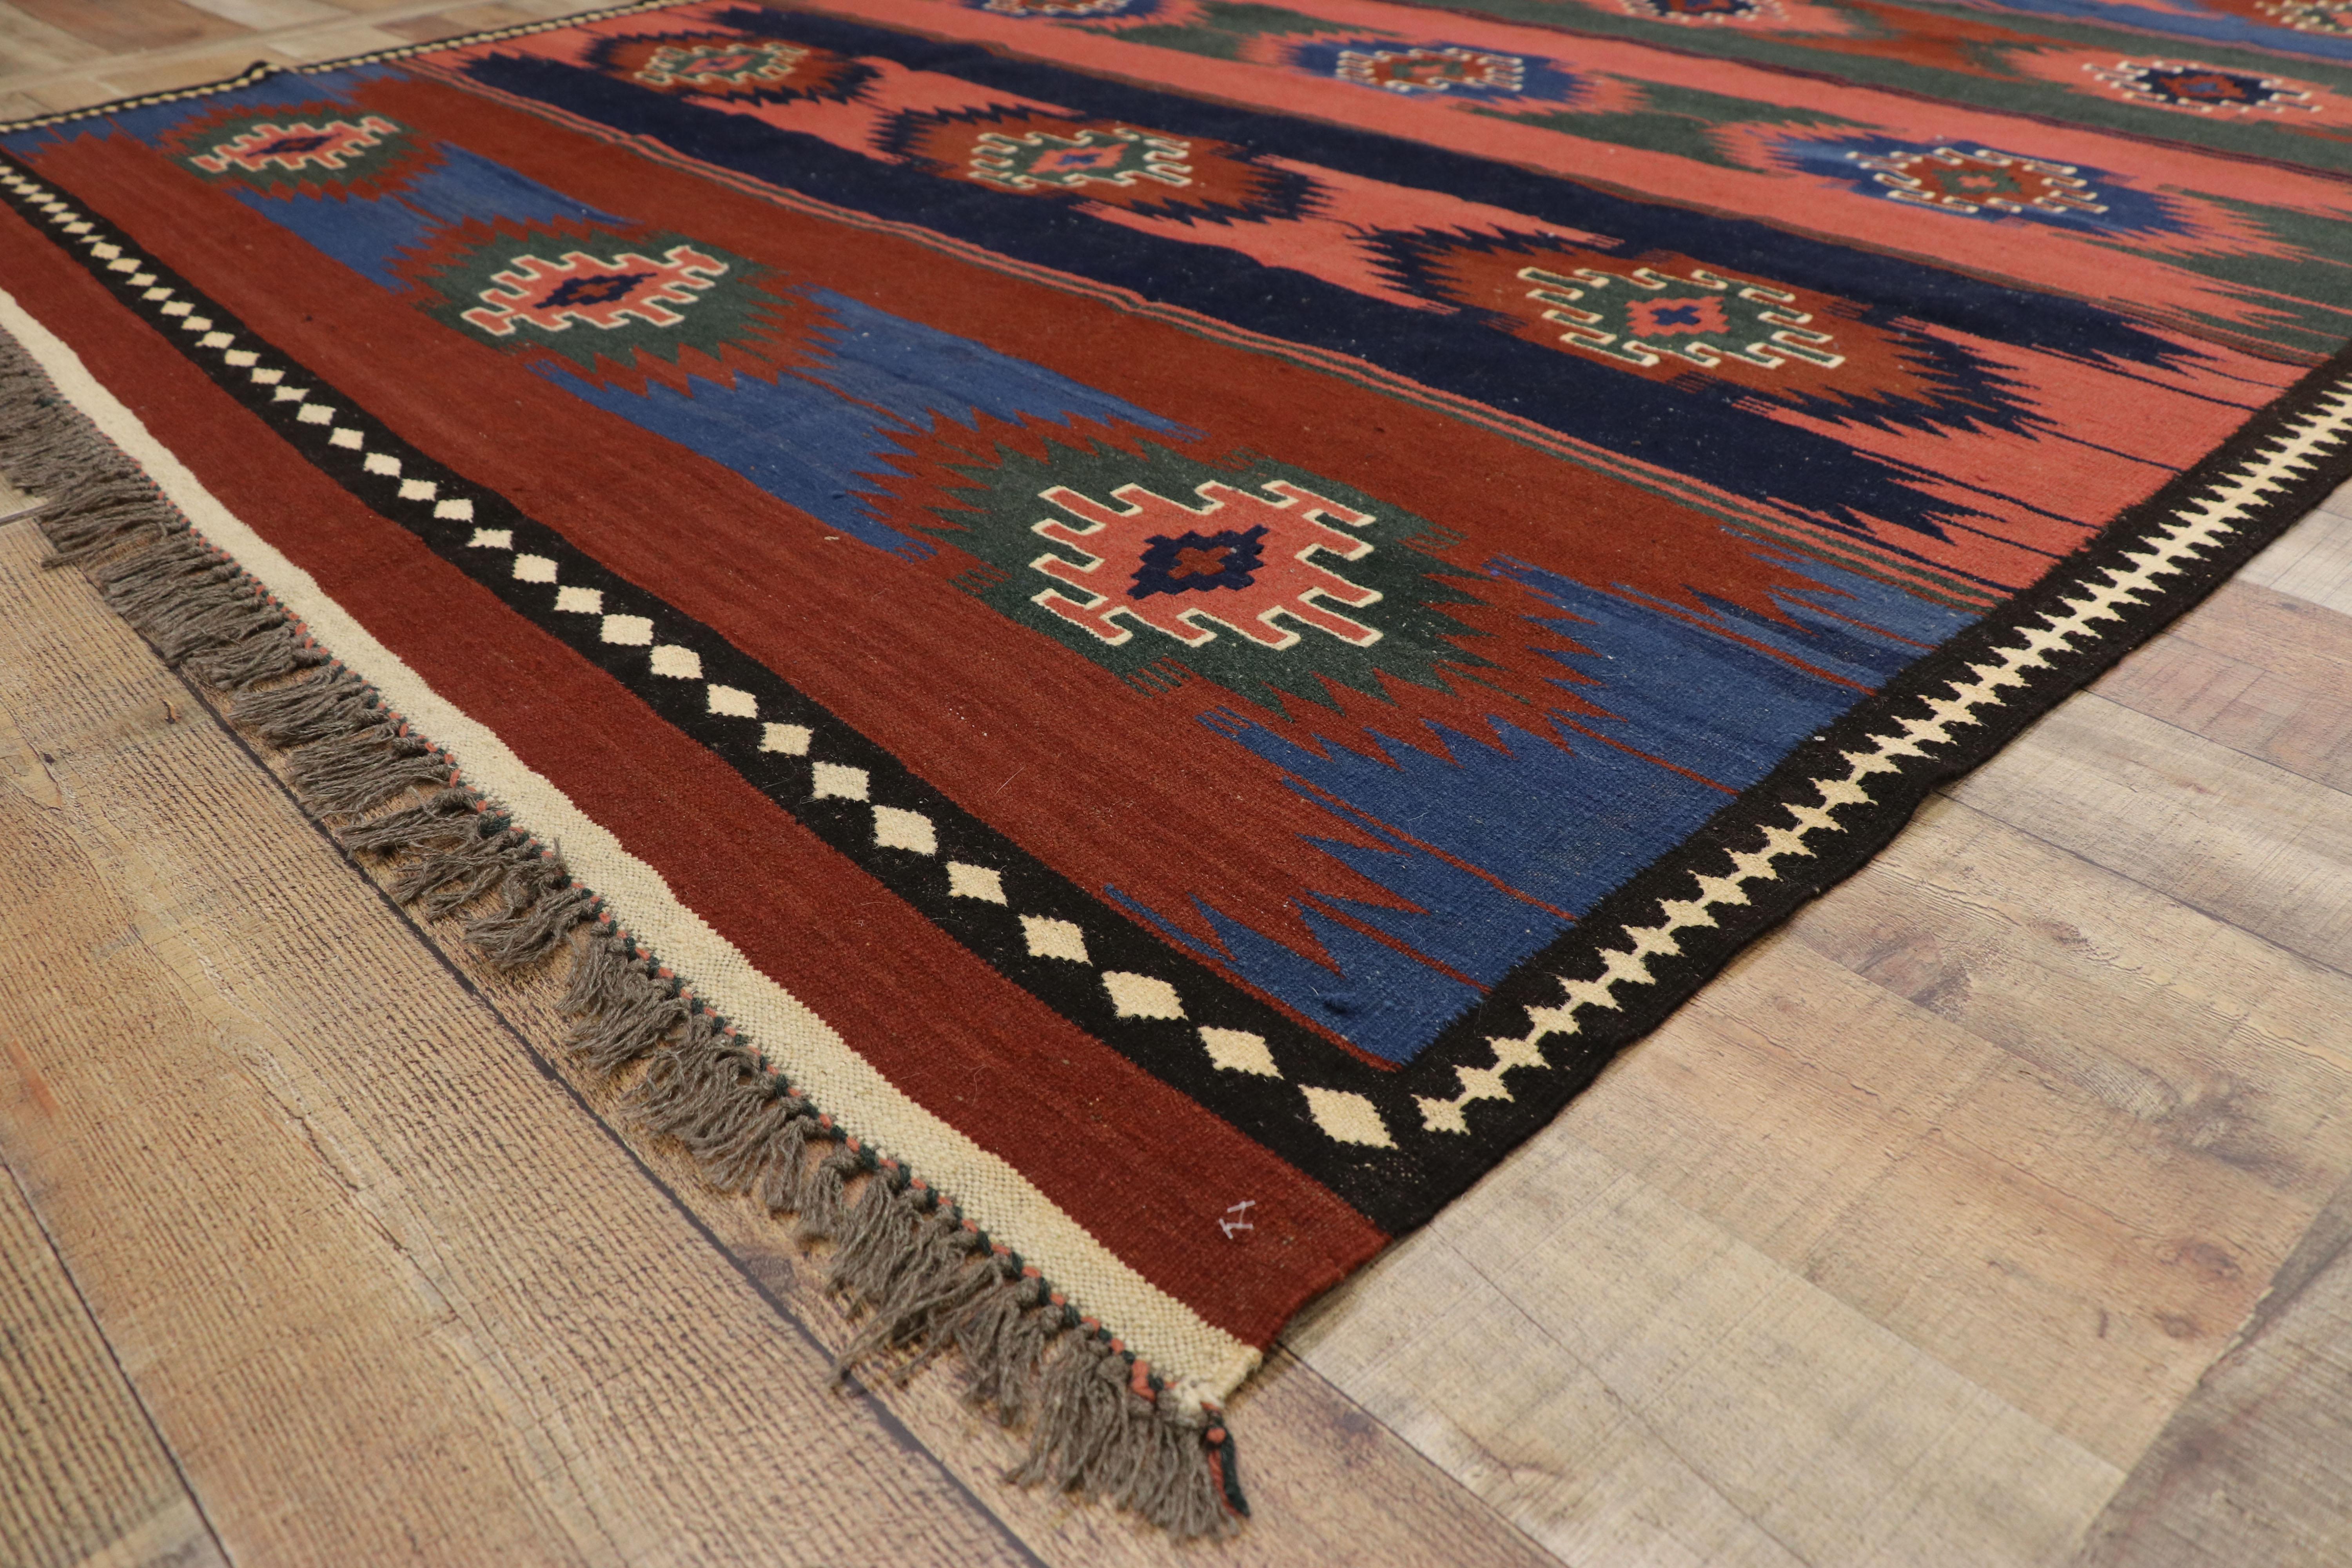 Wool Vintage Afghani Kilim Rug with Southwestern Navajo Native American Style